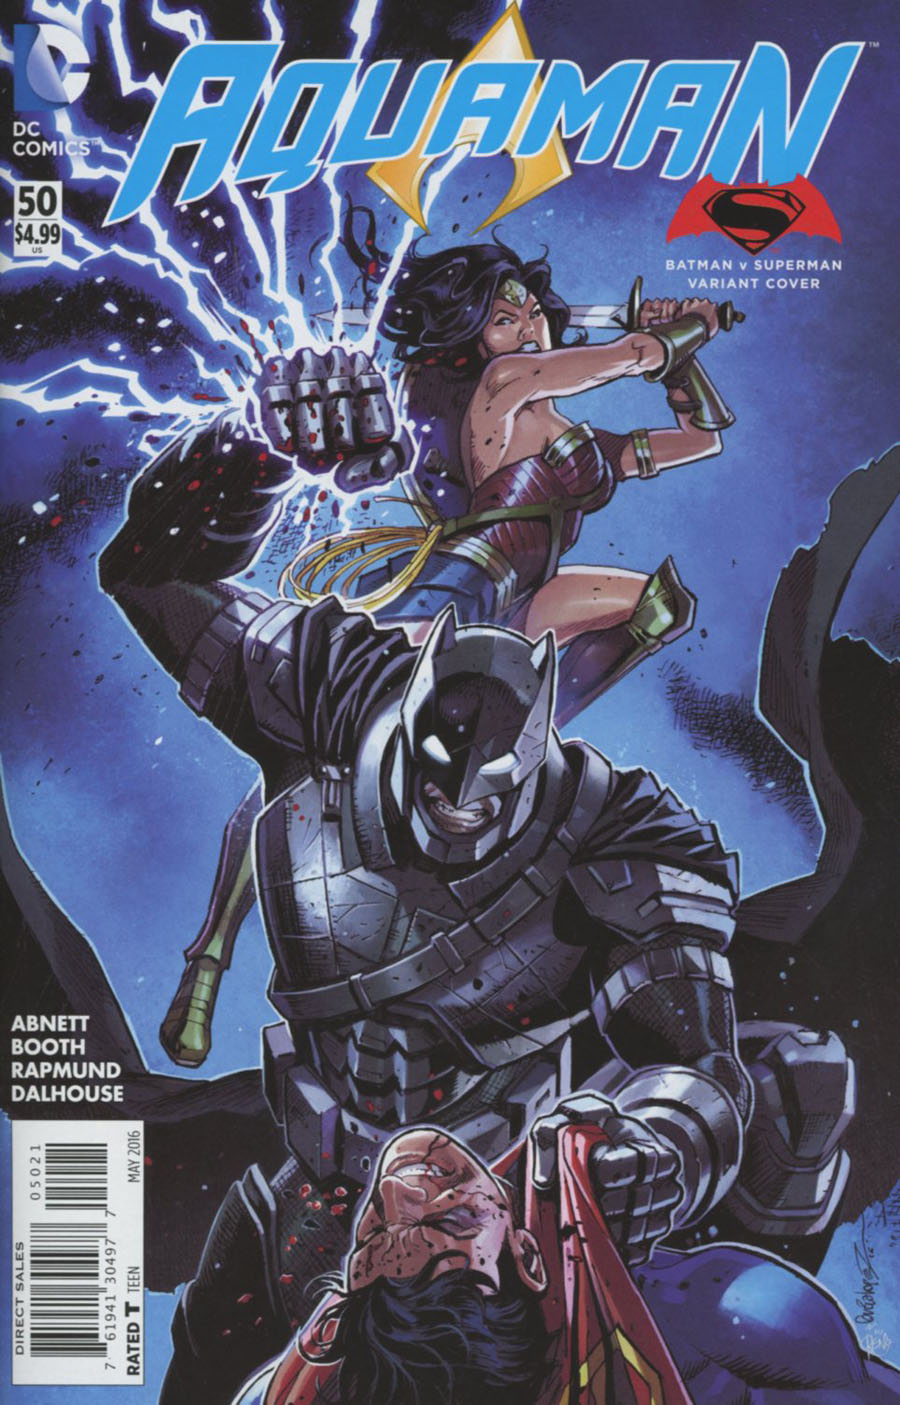 Aquaman Vol 5 #50 Cover B Variant Jose Luis Garcia-Lopez Batman v Superman Dawn Of Justice Cover